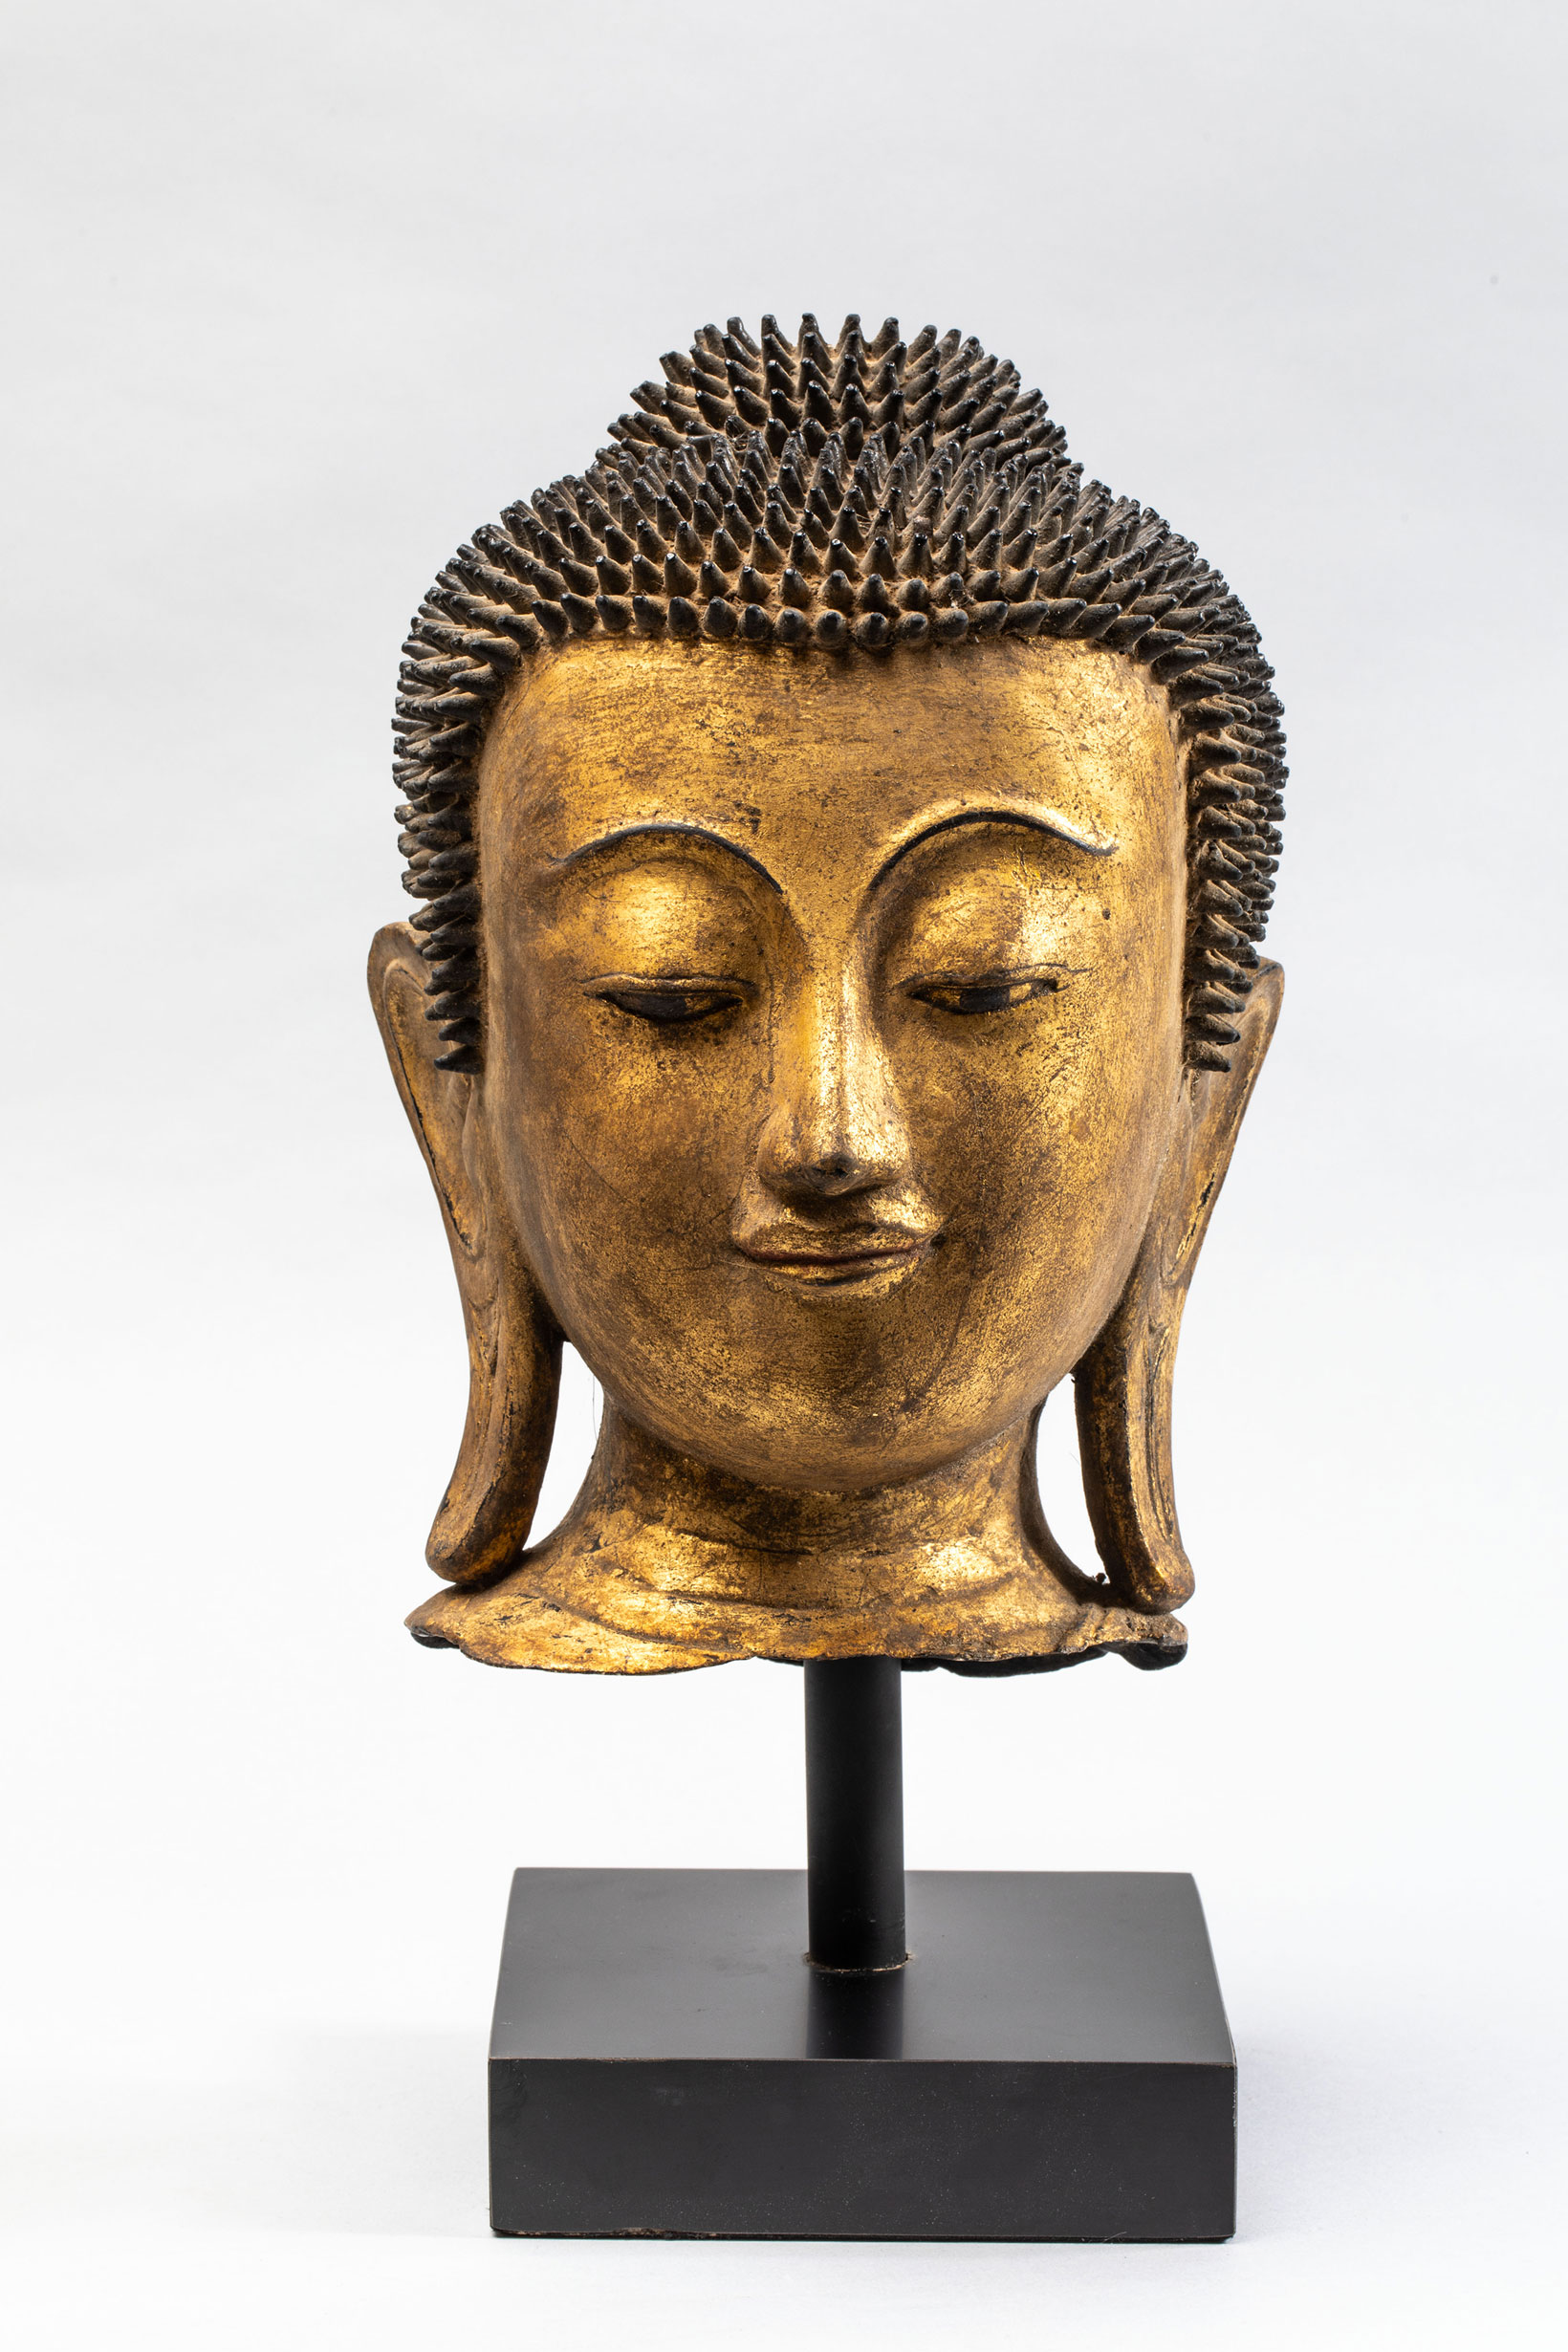 Tête de Buddha coiffée de fines bouclettes hérissées surmontée de la protubérance crânienne ushnisha